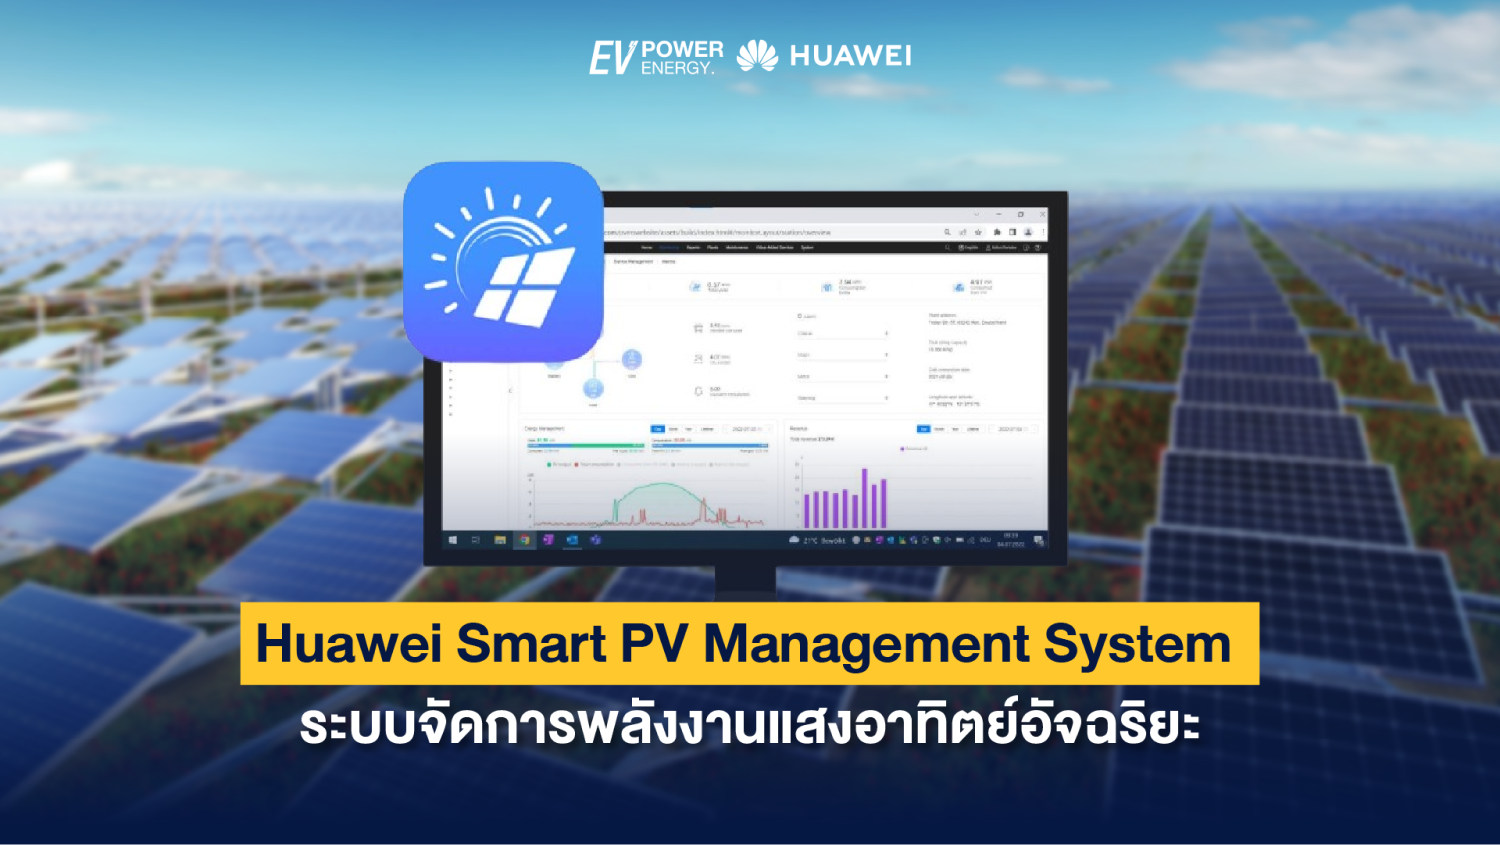 Huawei Smart PV Management System ระบบจัดการพลังงานแสงอาทิตย์อัจฉริยะ